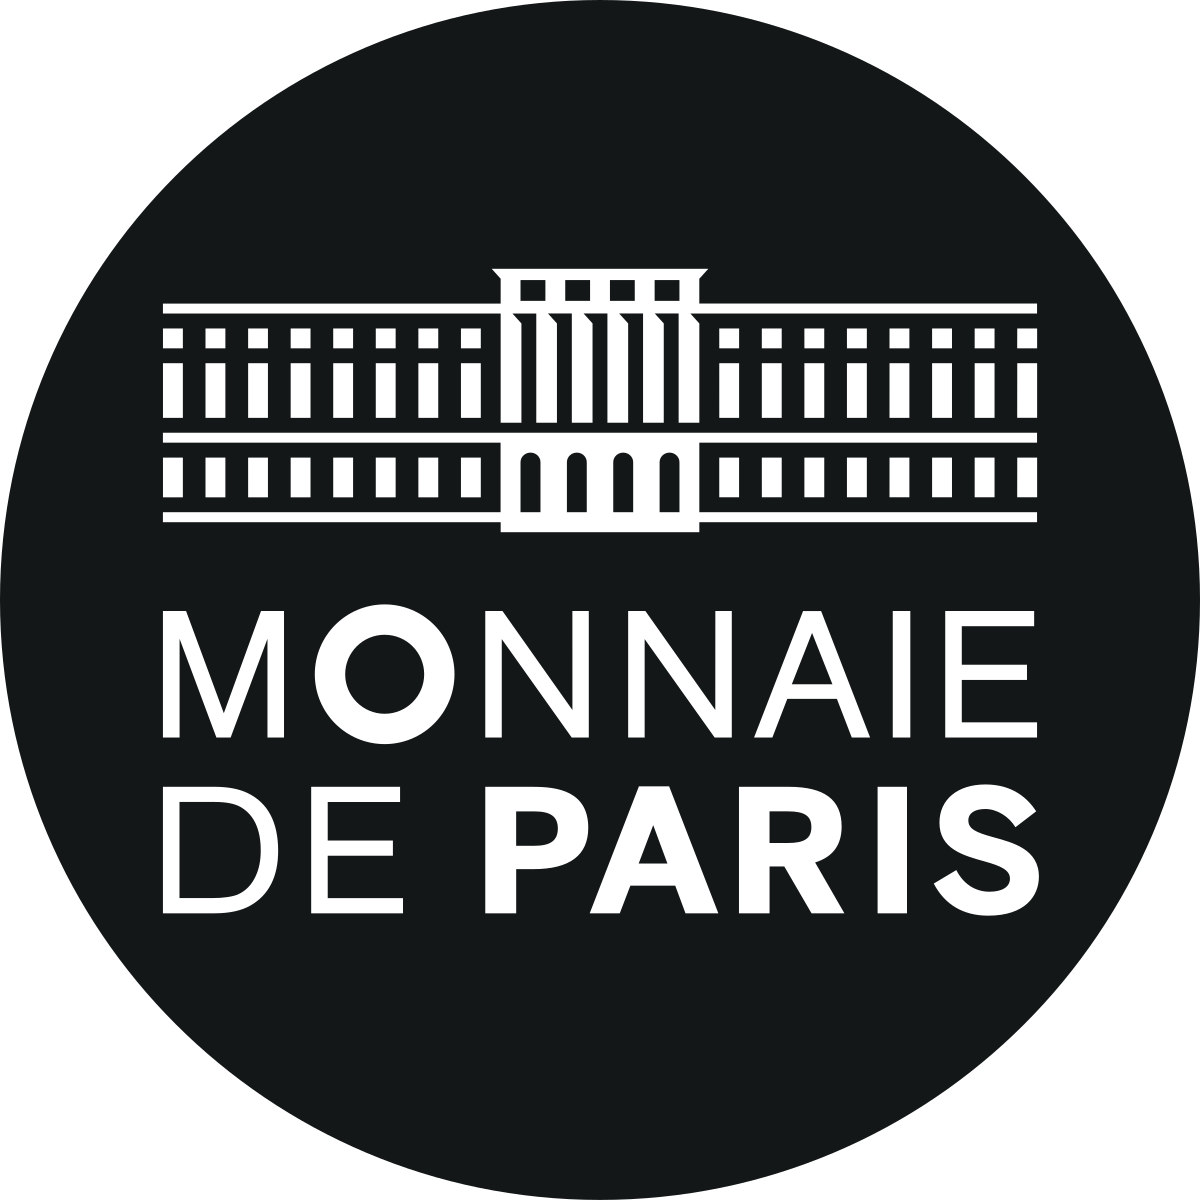 Monnaie_de_Paris_logo.svg